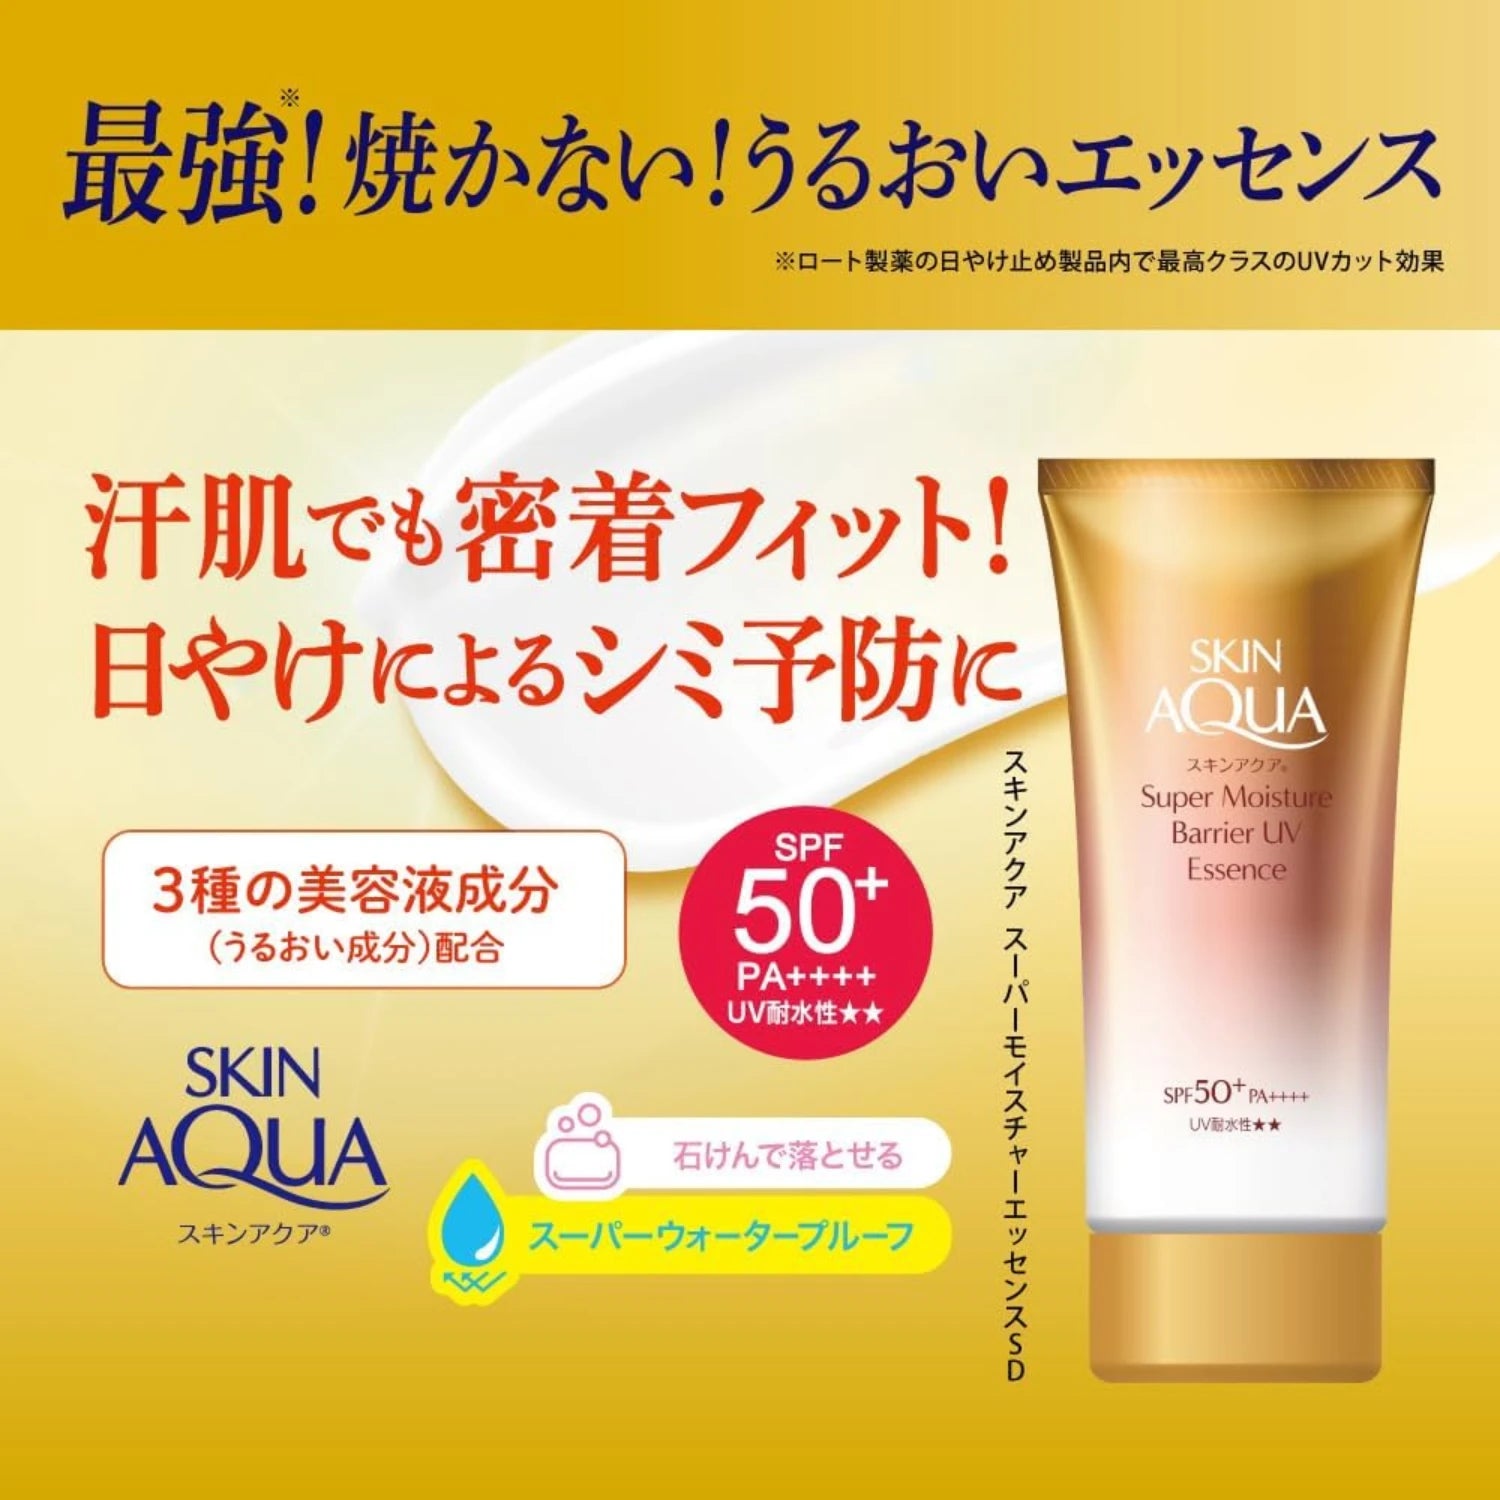 Skin Aqua Super Moisture Barrier UV Essense SPF 50+ PA++++ 70g